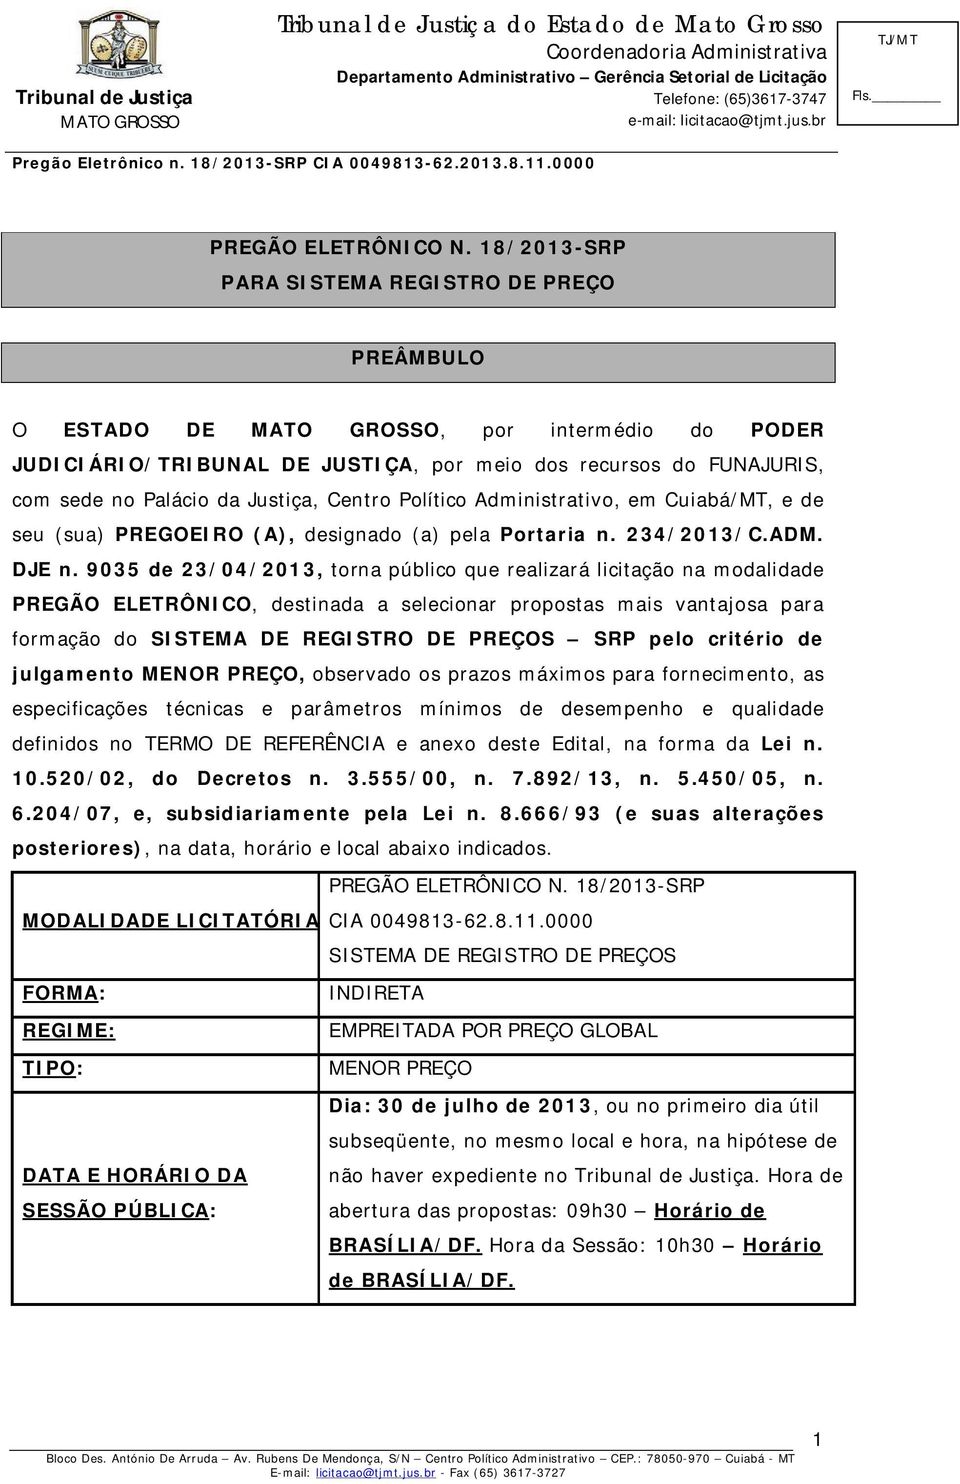 Político Administrativo, em Cuiabá/MT, e de seu (sua) PREGOEIRO (A), designado (a) pela Portaria n. 234/2013/C.ADM. DJE n.